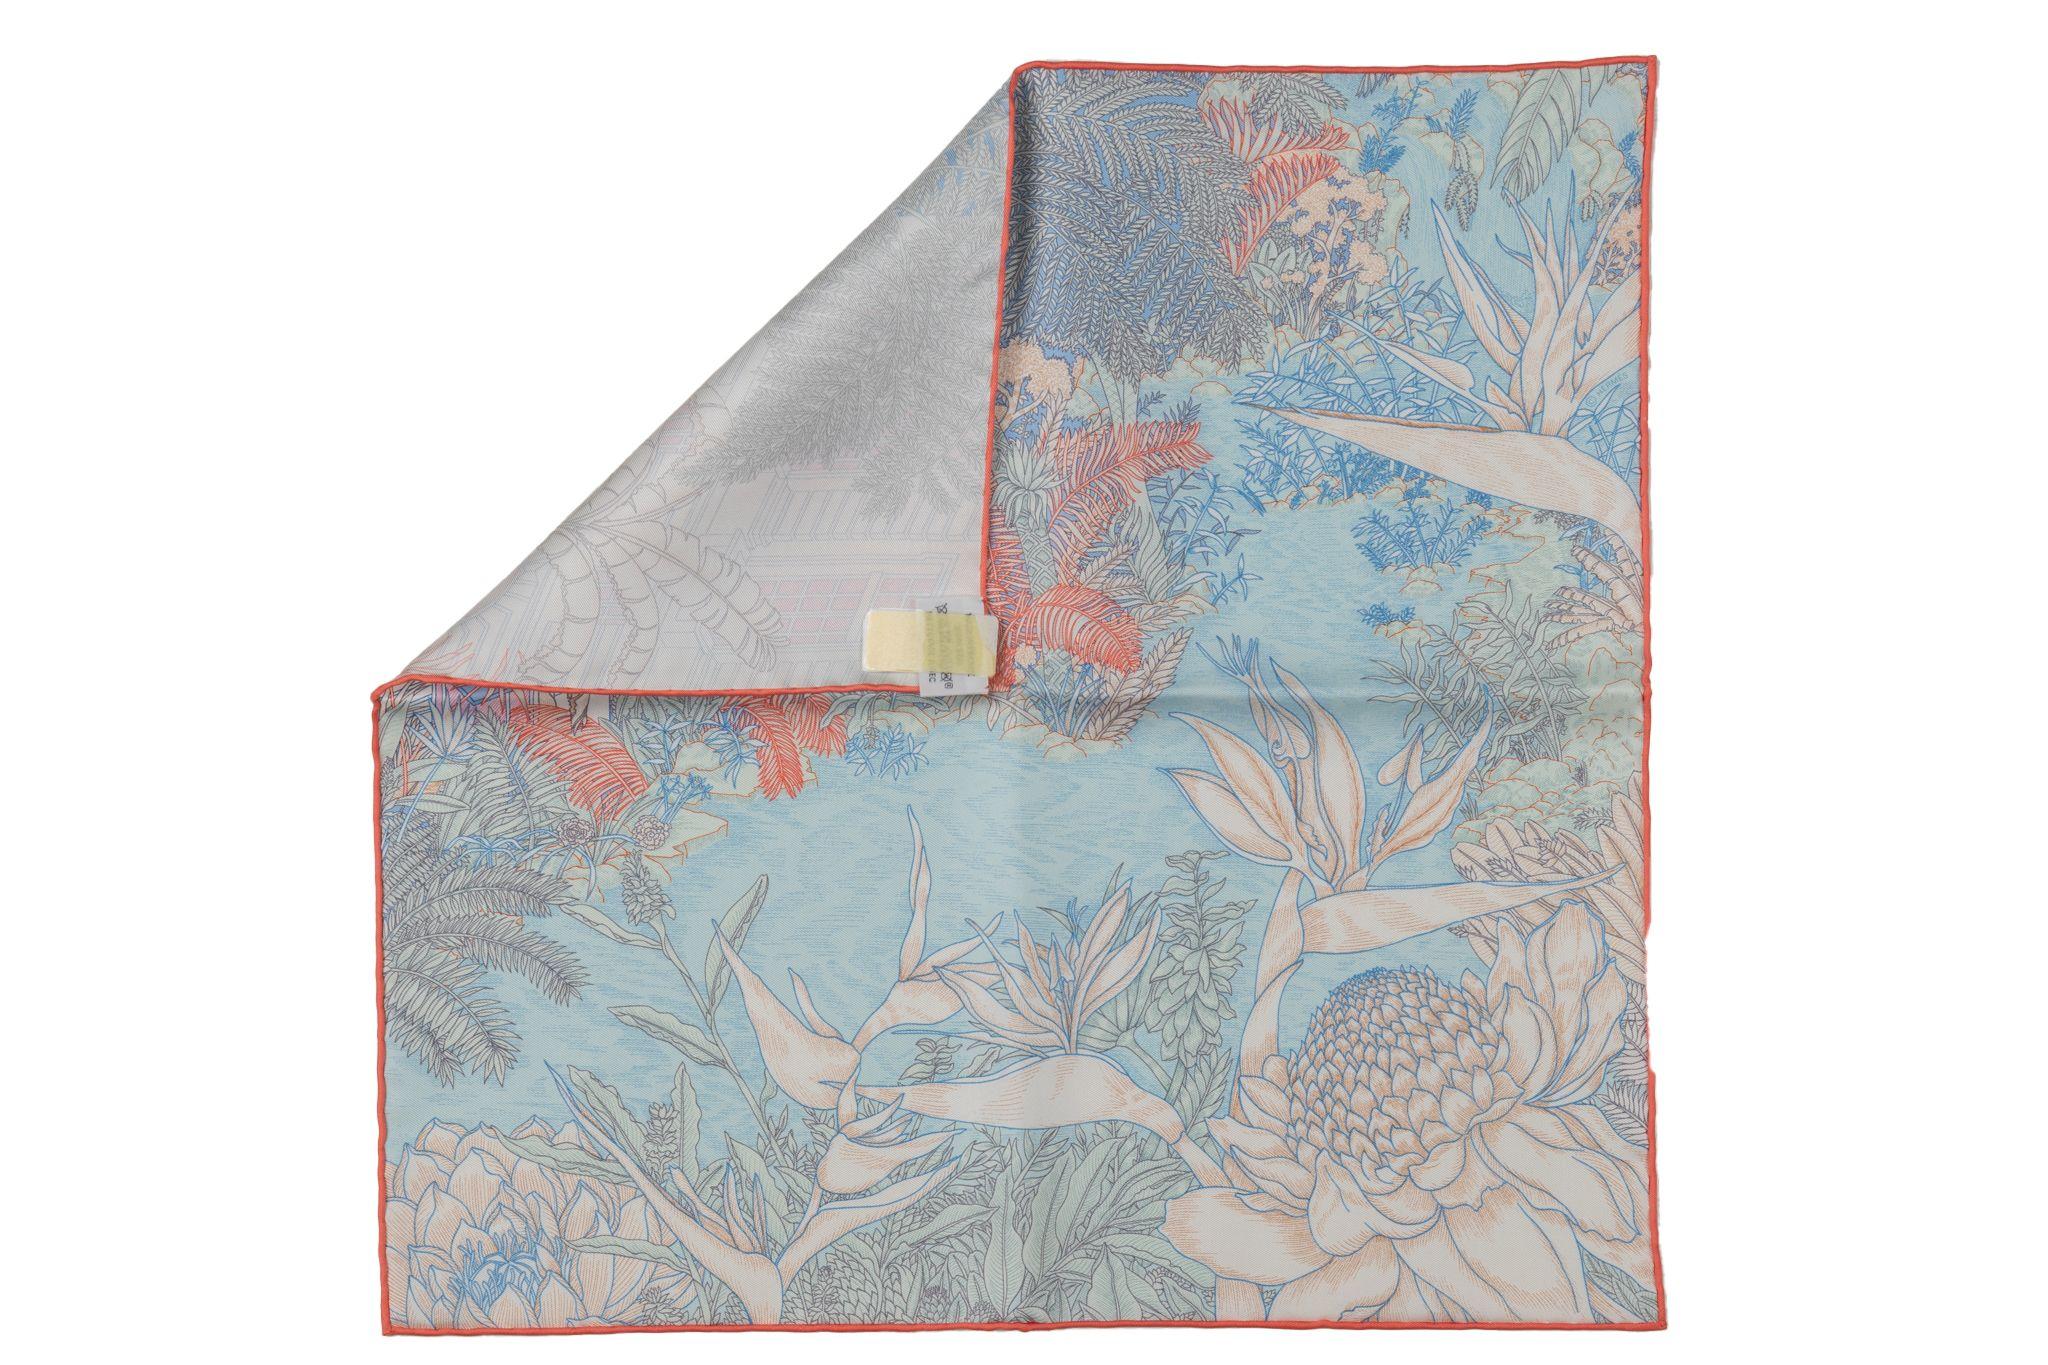 Hermès Marke neu in Box tropischen Garten grau und blau Seide gavroche. Handgerollte Kanten.  Kommt mit Originalverpackung.